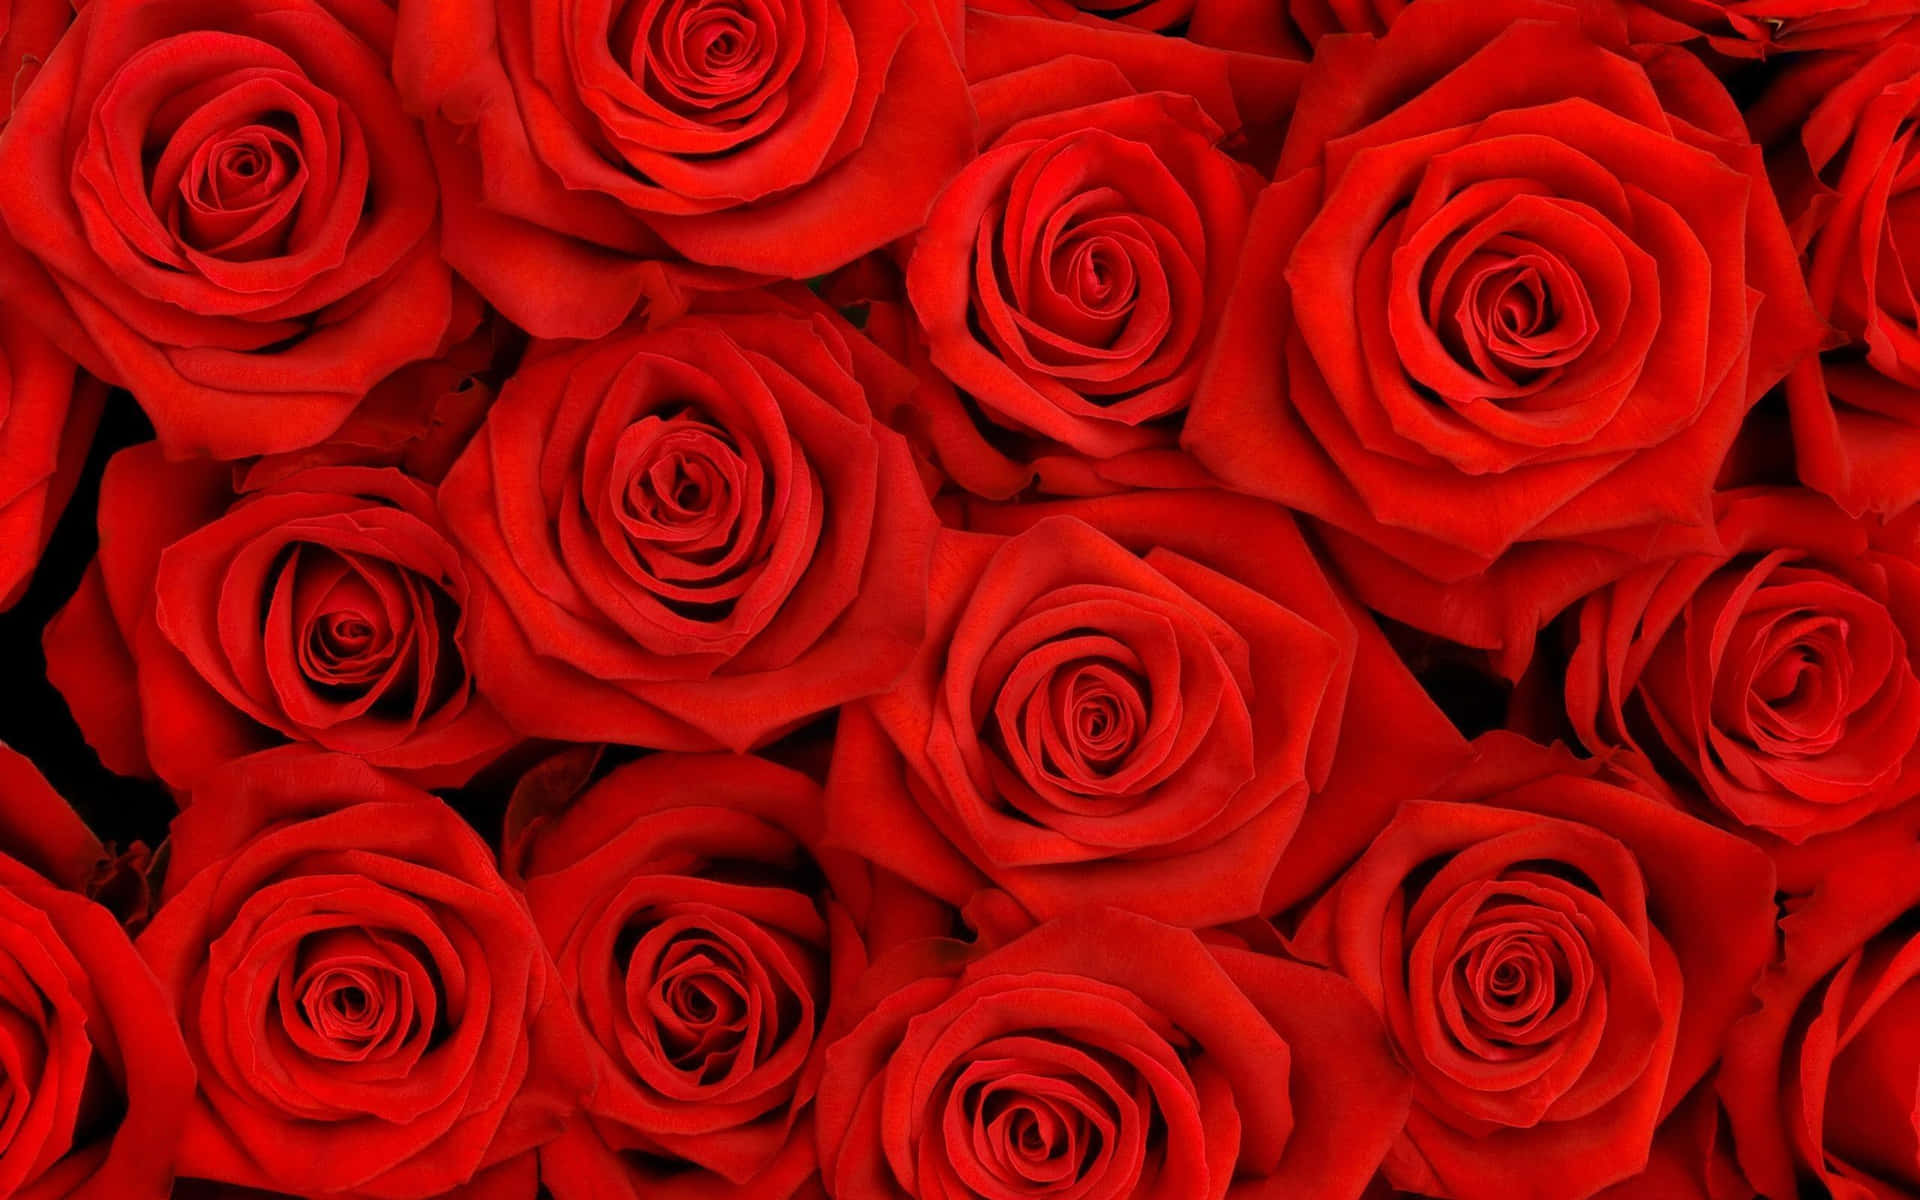 Estéticada Rosa Vermelha - Beleza Na Natureza. Papel de Parede